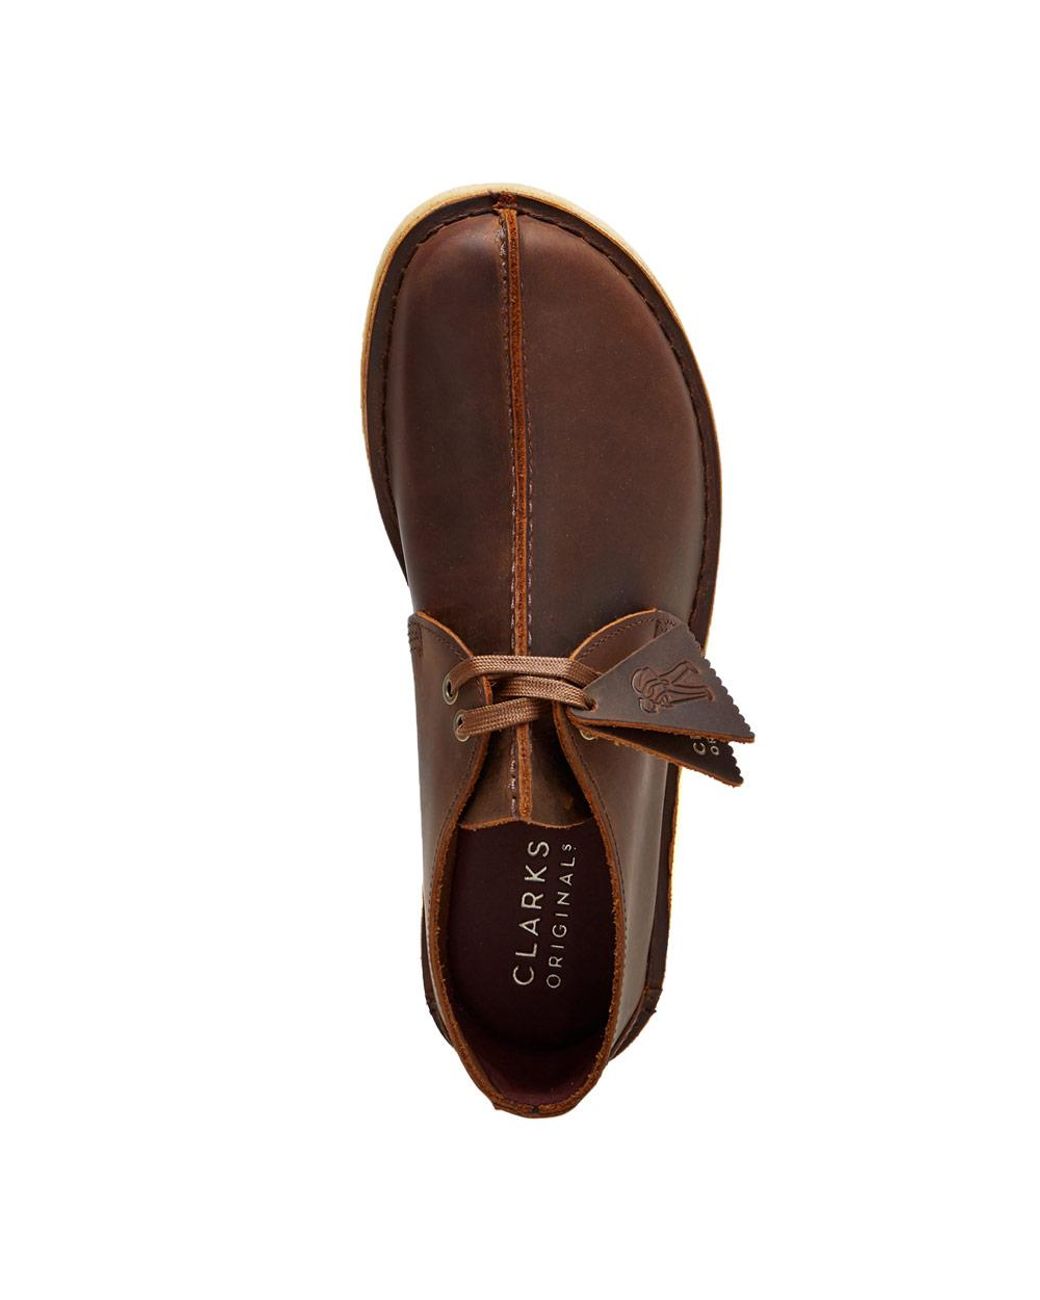 Clarks Desert Trek Shoes in Brown for Men | Lyst